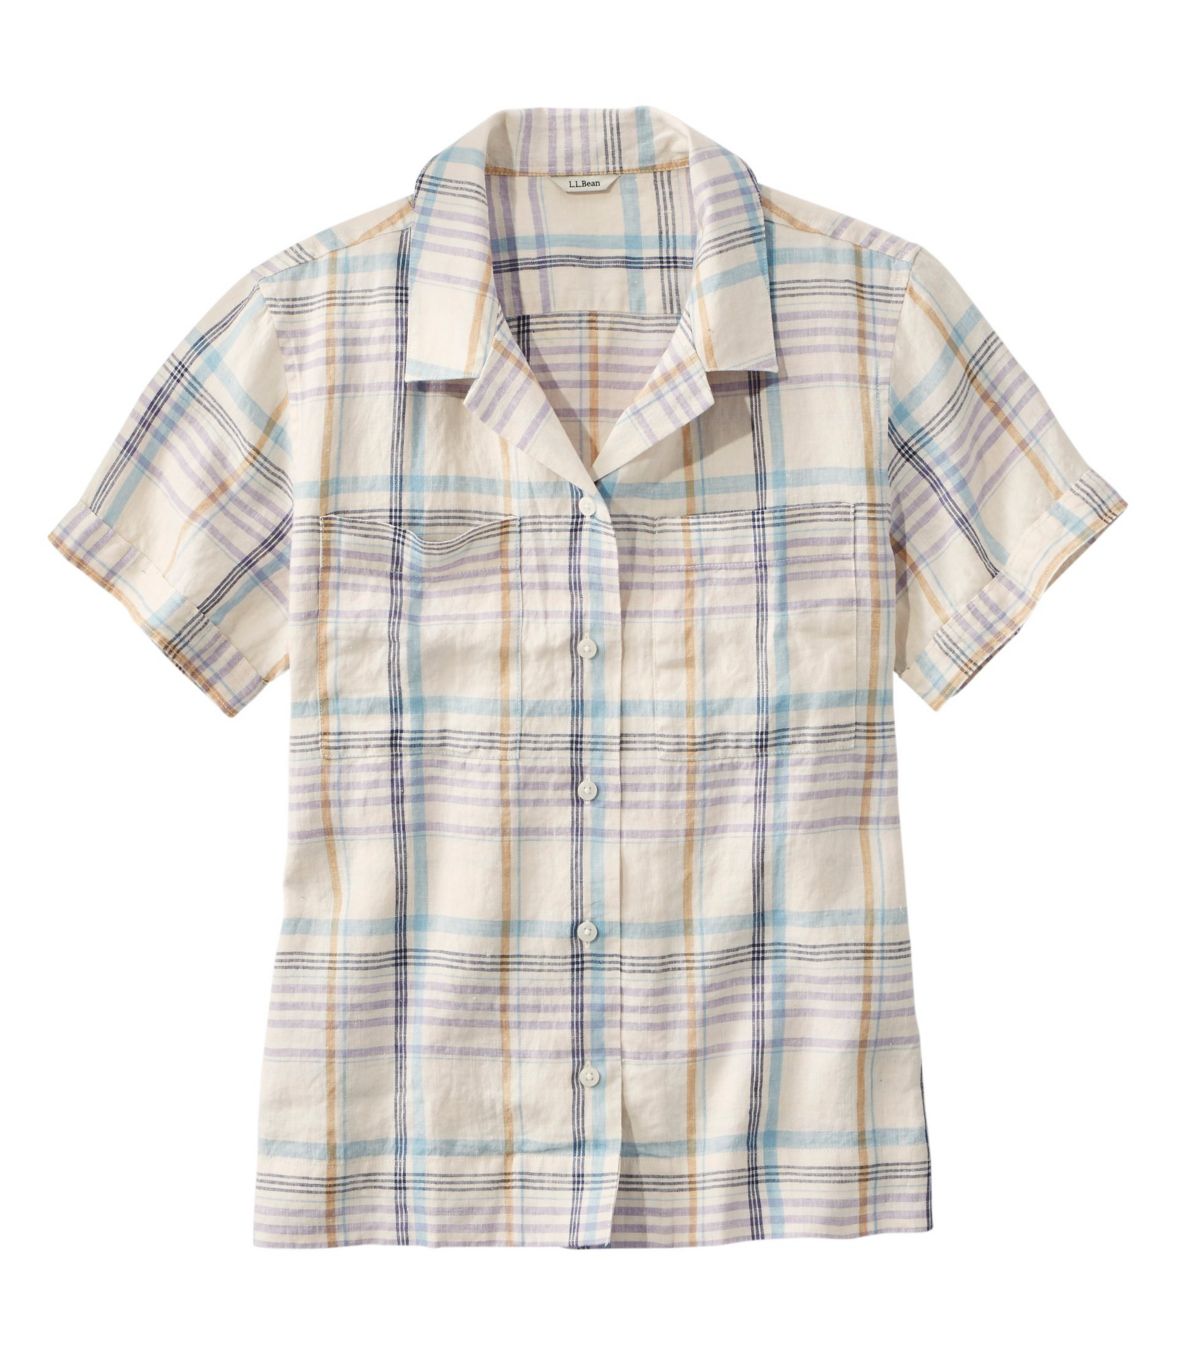 Women's Premium Washable Linen Camp Shirt, Short-Sleeve Plaid